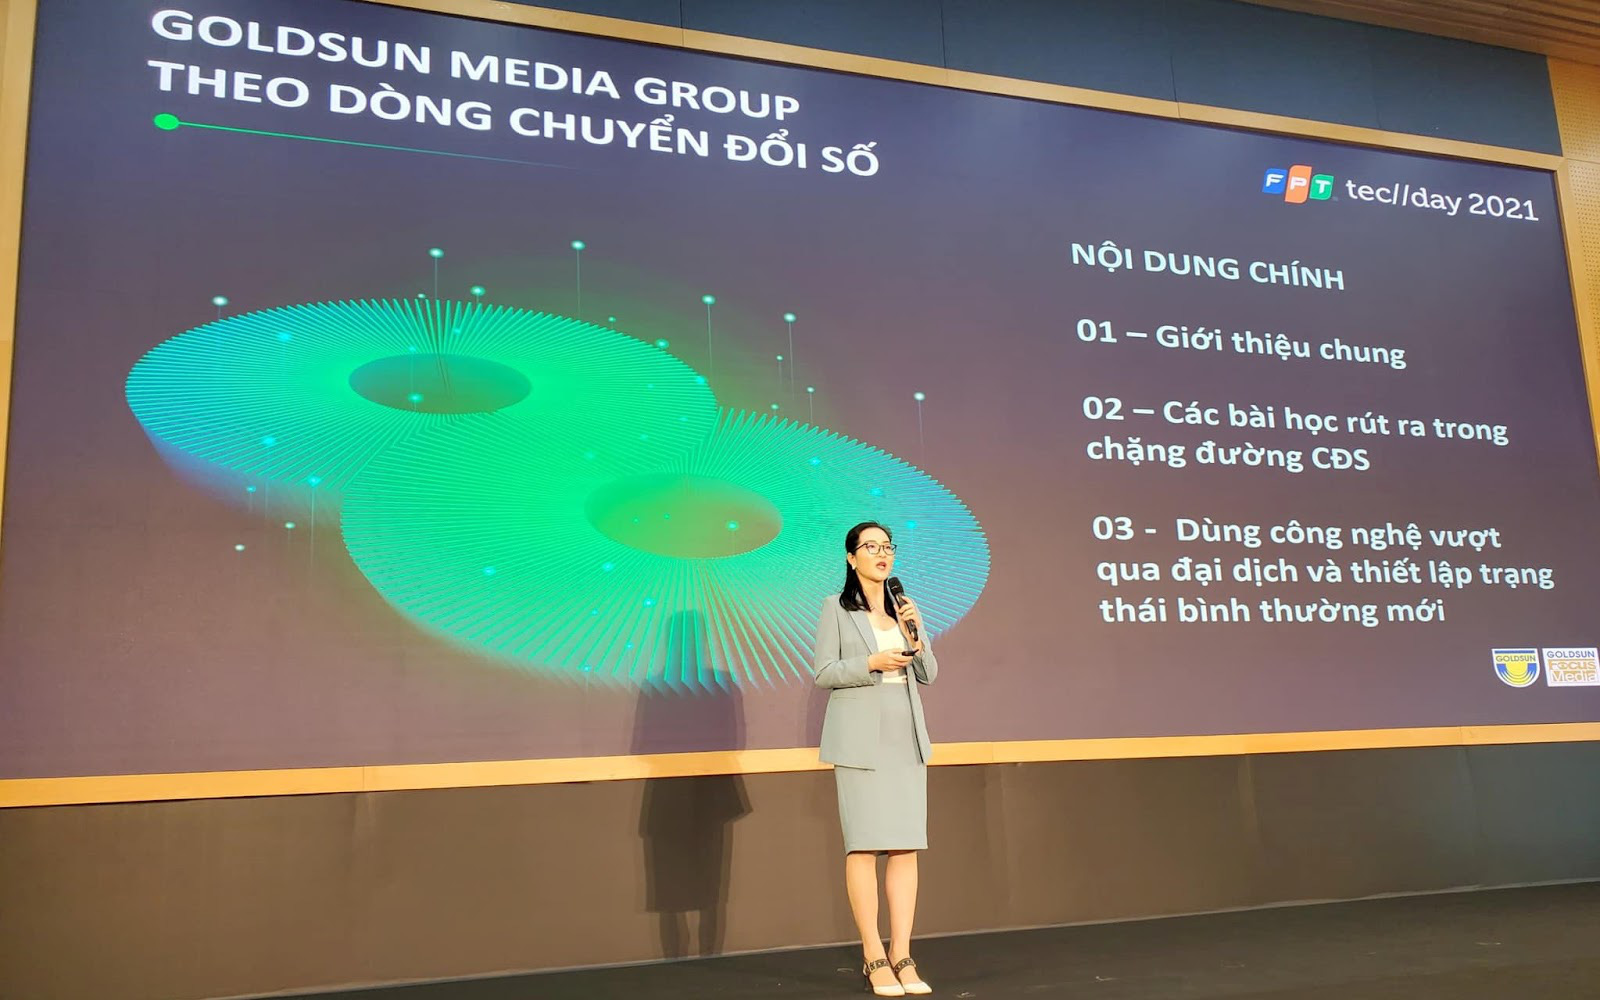 Hành trình theo dòng chuyển đổi số tại Goldsun Media Group - Ảnh 1.